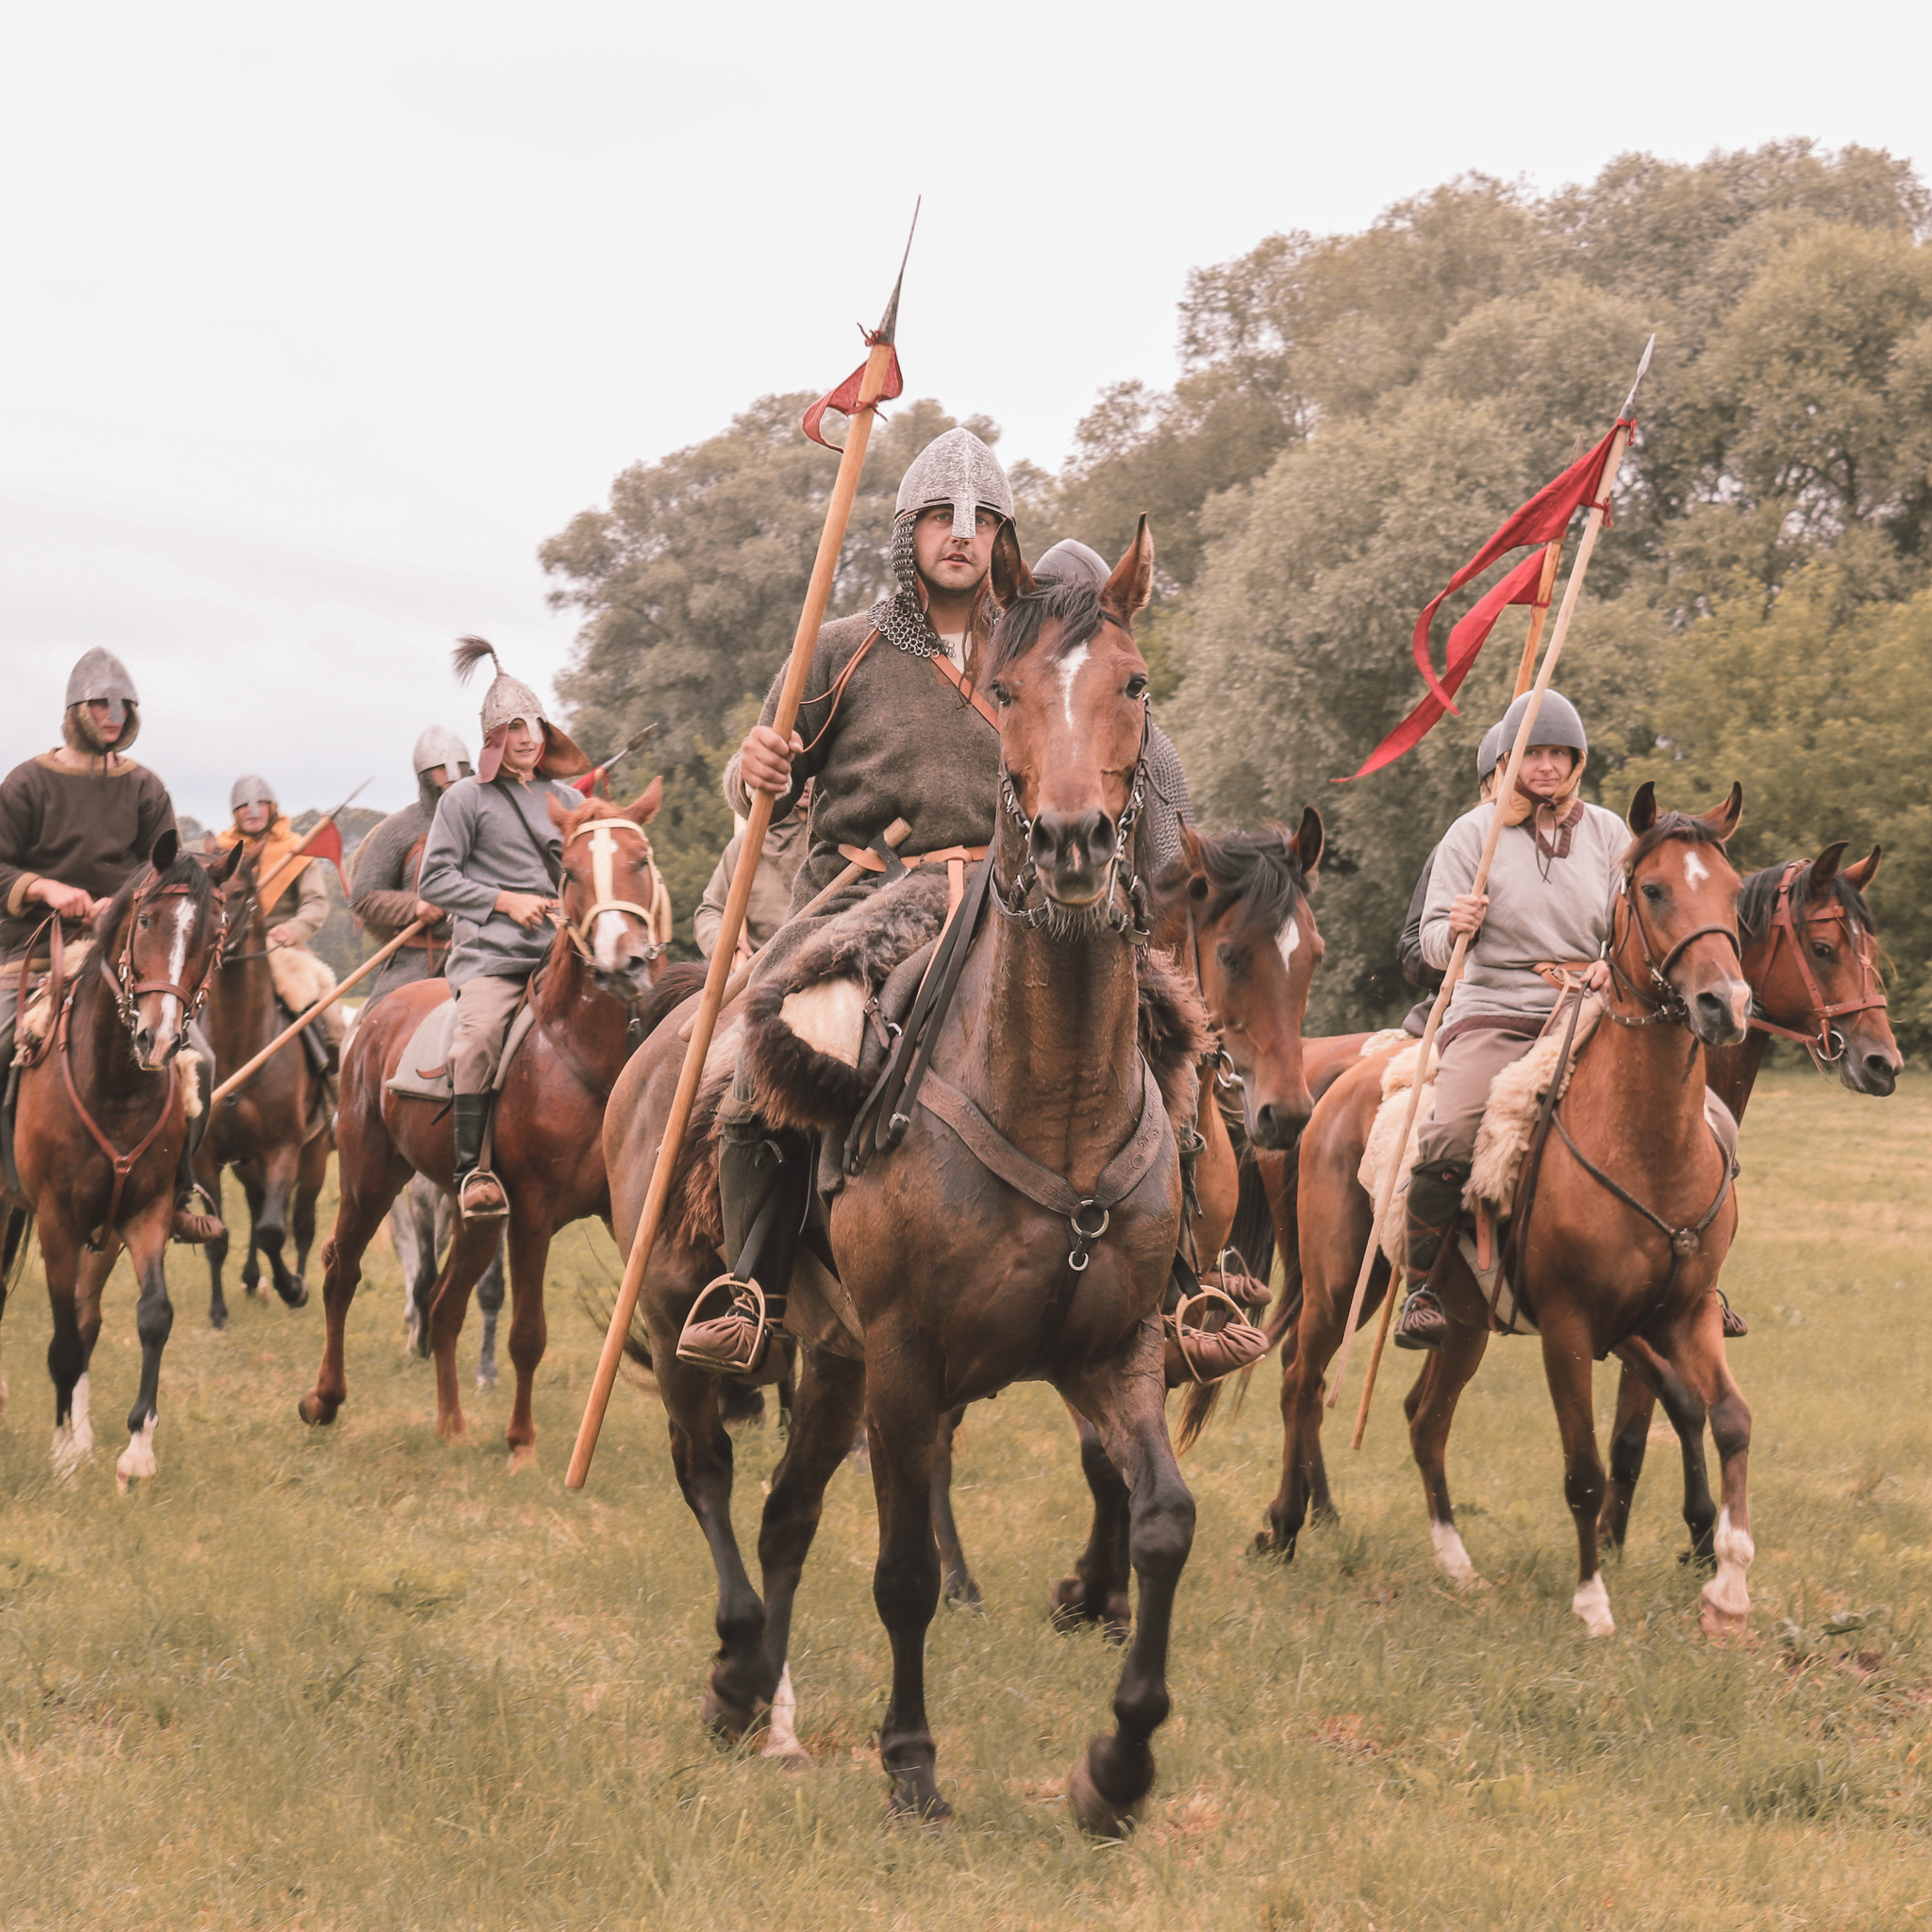 Kilku mężczyzn przebranych za rycerzy średniowiecznych jedzie na koniach.